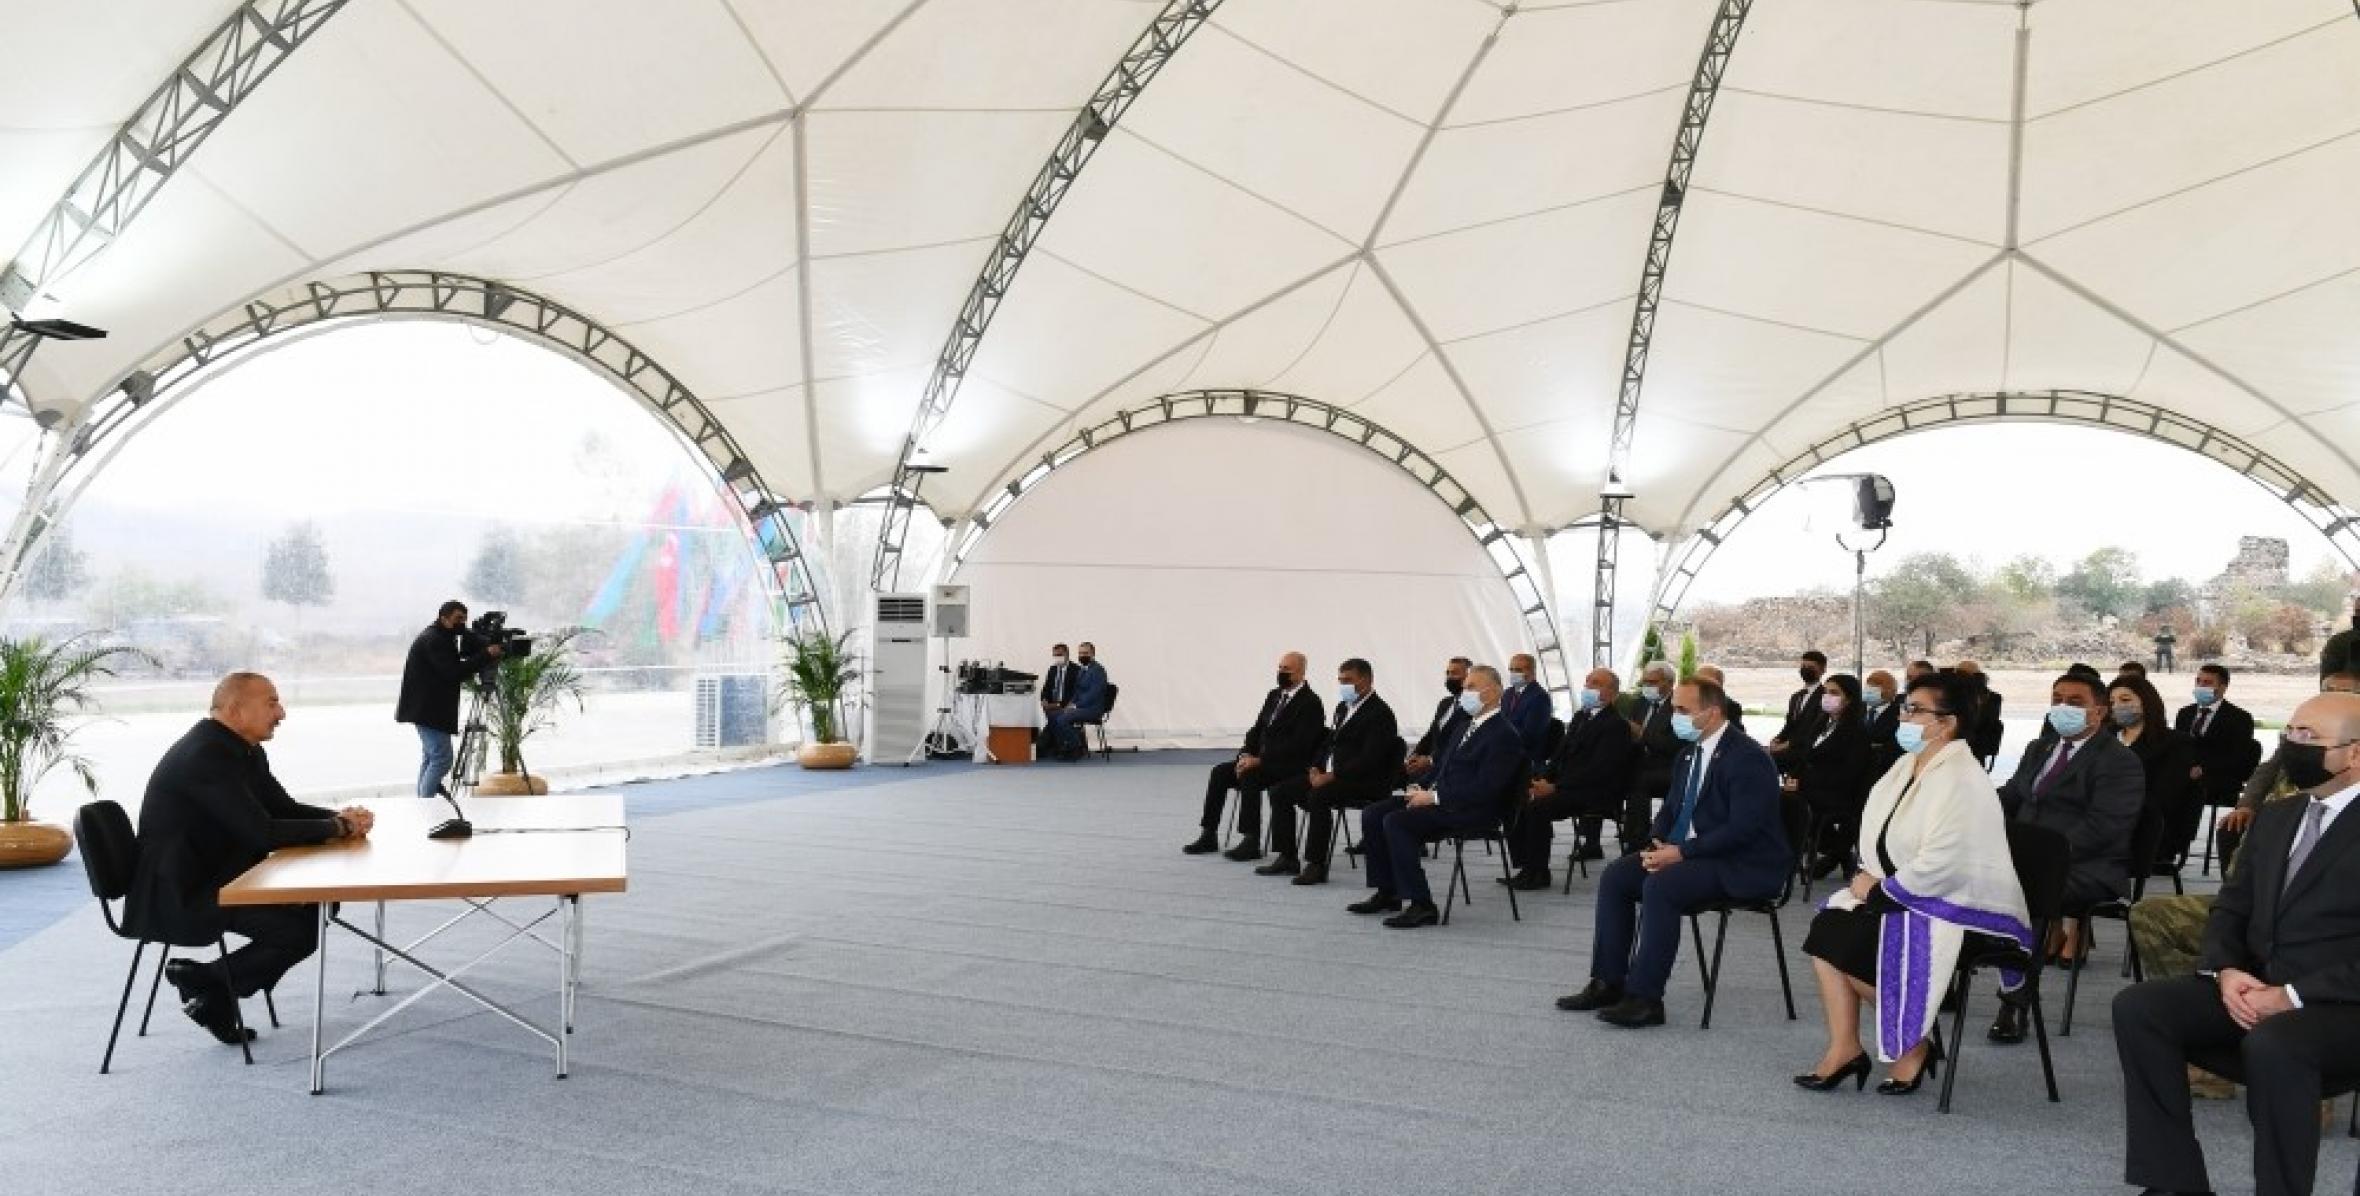 Ильхам Алиев встретился с представителями общественности Джебраильского района, заложил фундамент Мемориального комплекса и восстановления города